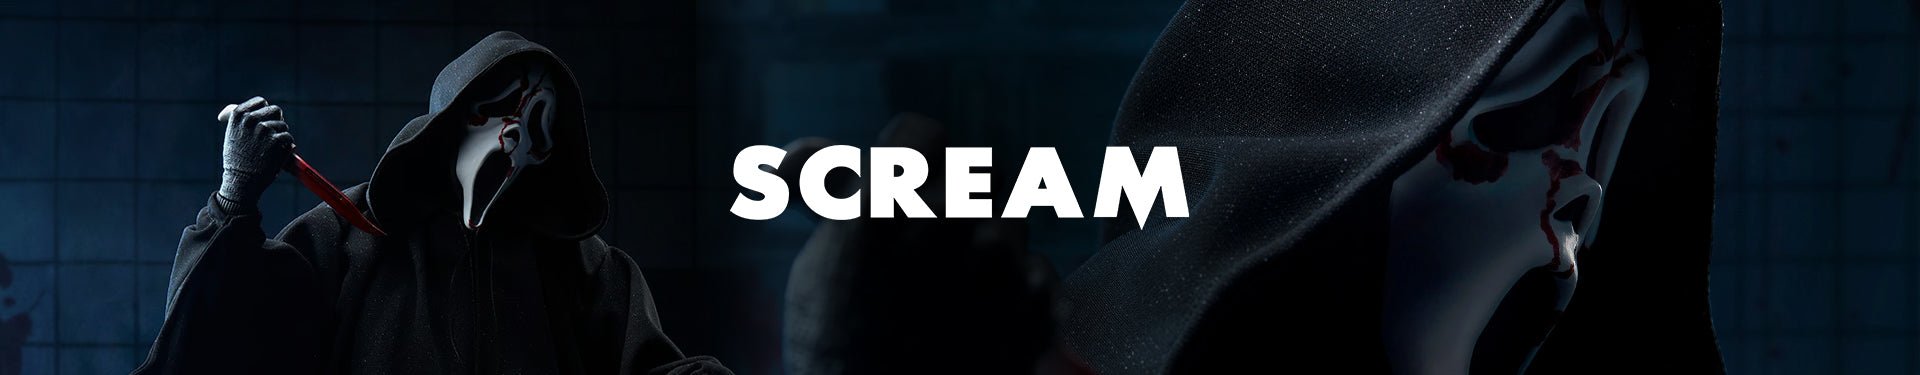 Scream - Zombie